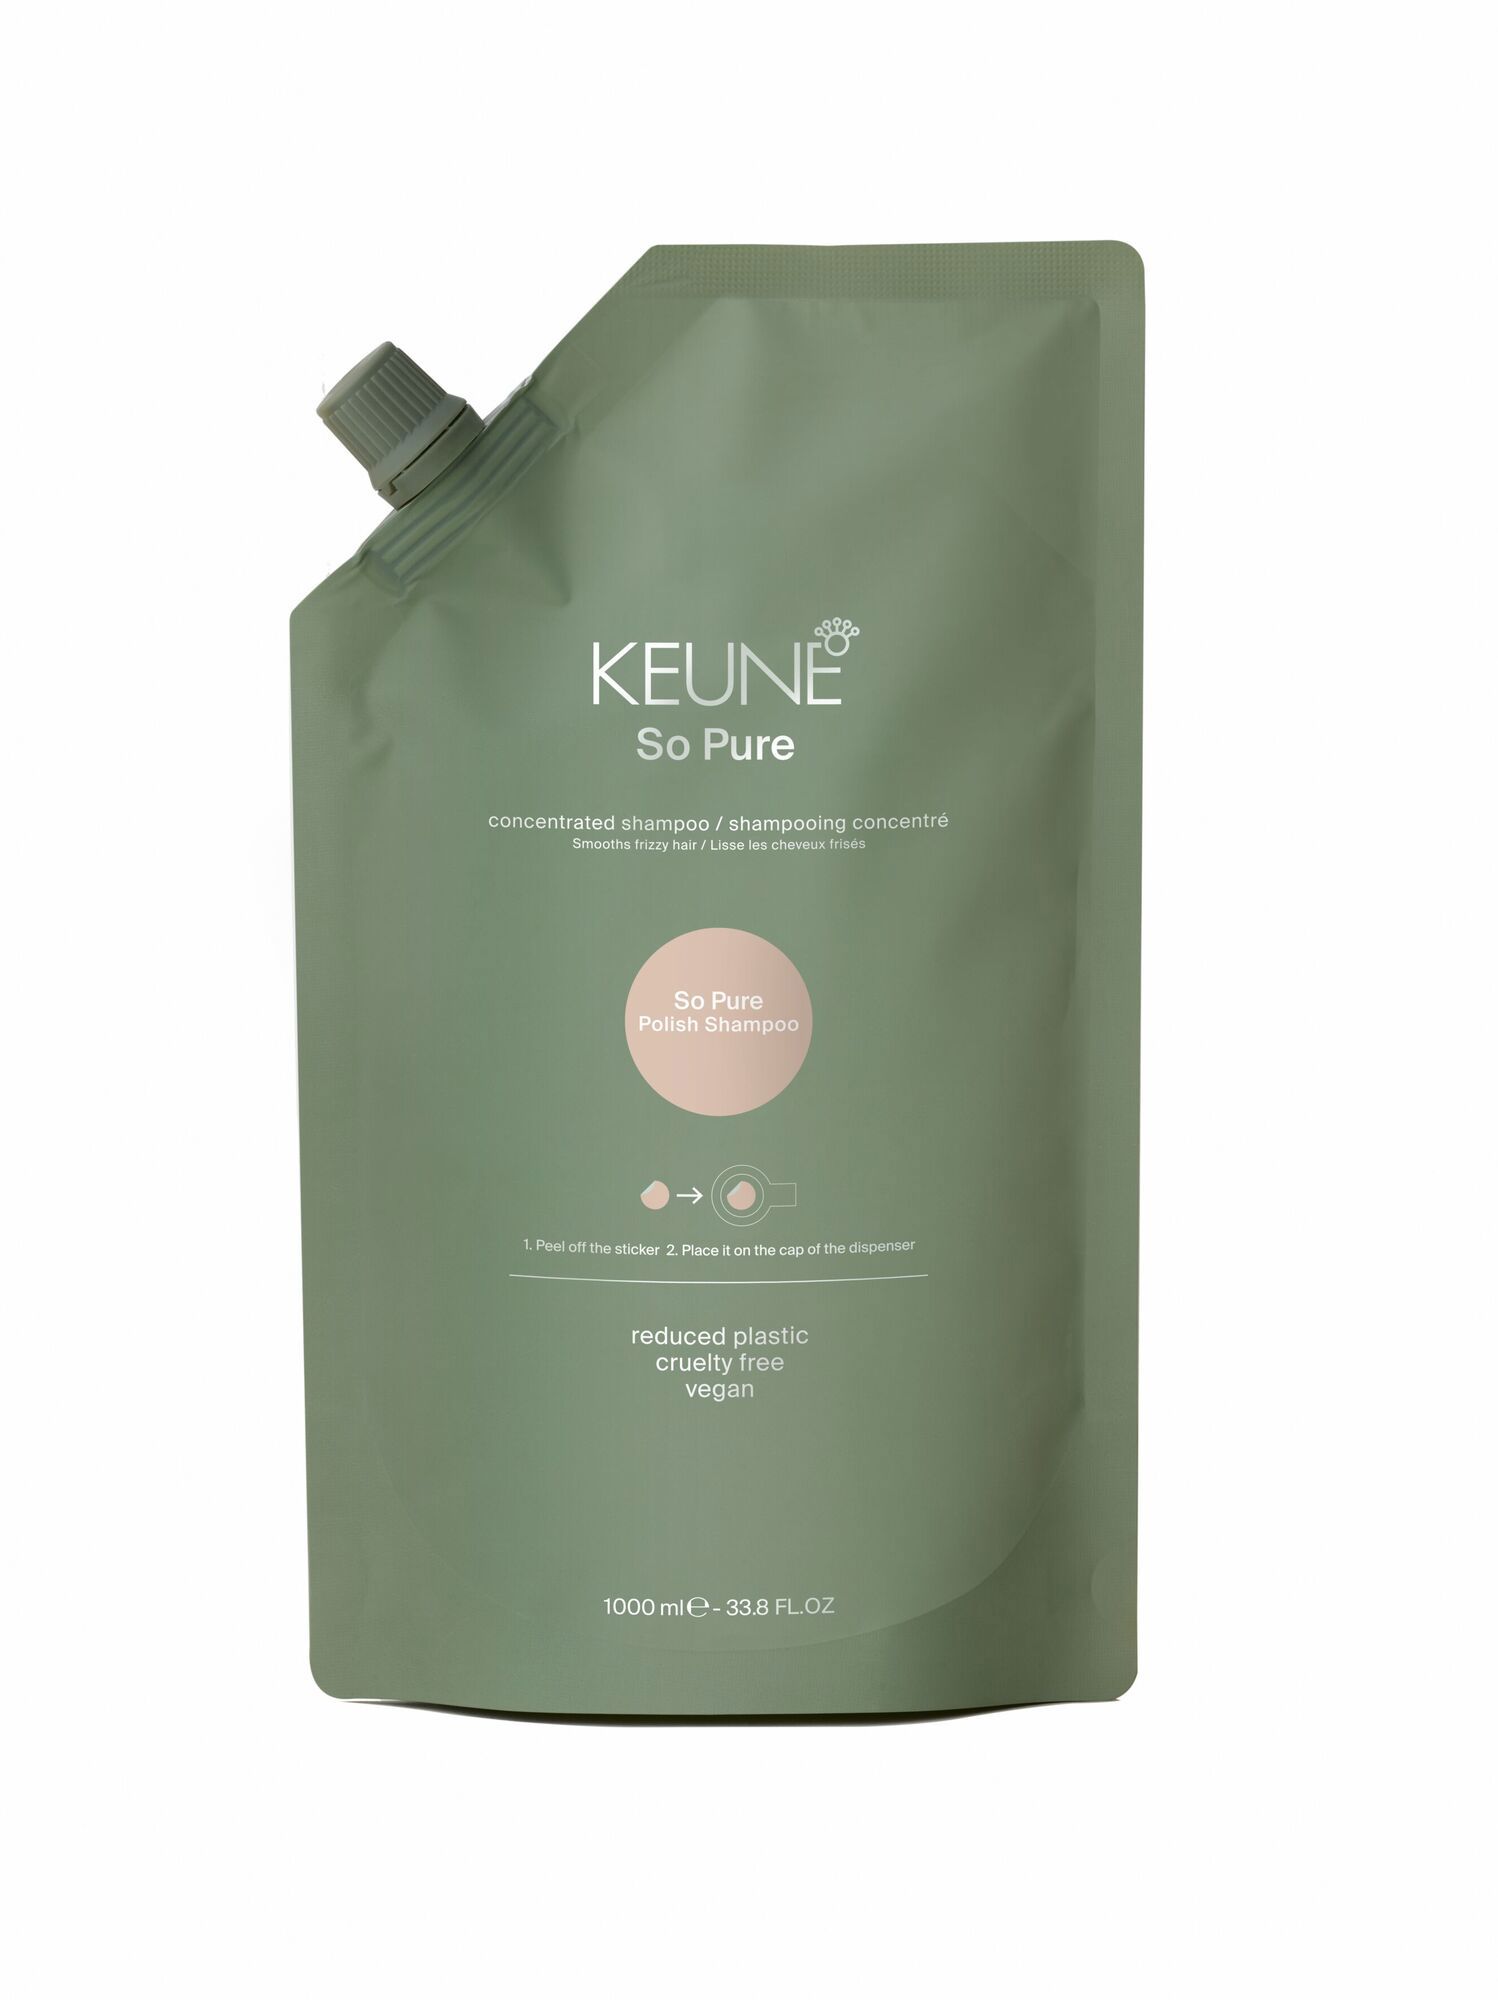 Keune So Pure Polish Shampoo: Natürliche Haarpflege für glattes Haar und Frizz-Kontrolle. Jetzt auf keune.ch entdecken!